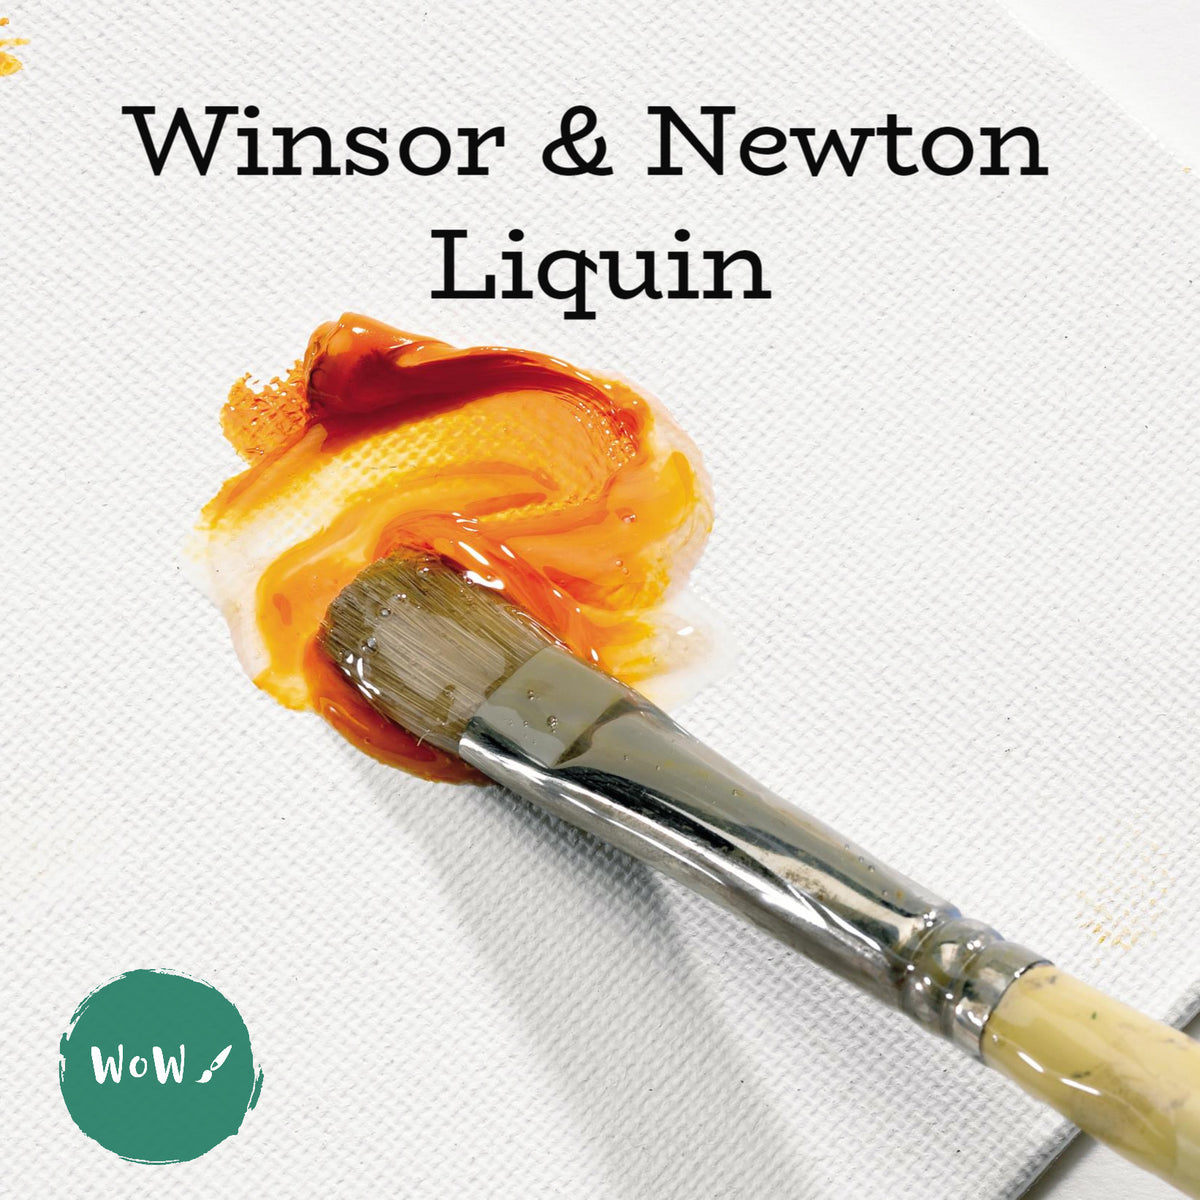 Winsor & Newton Oil Colour Painting Medium Liquin Original 250ml  884955016381